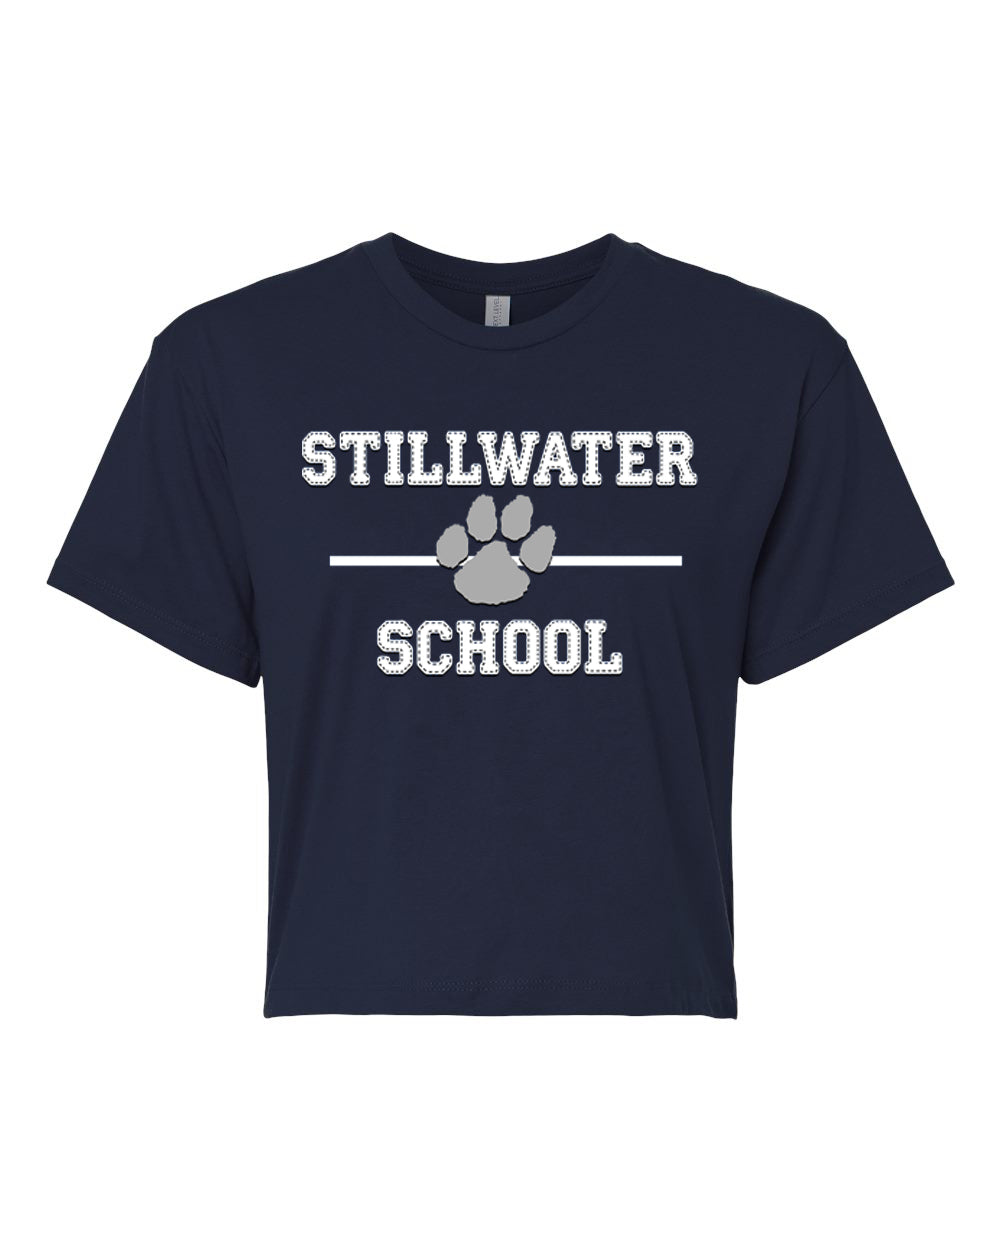 Stillwater design 11 Crop Top